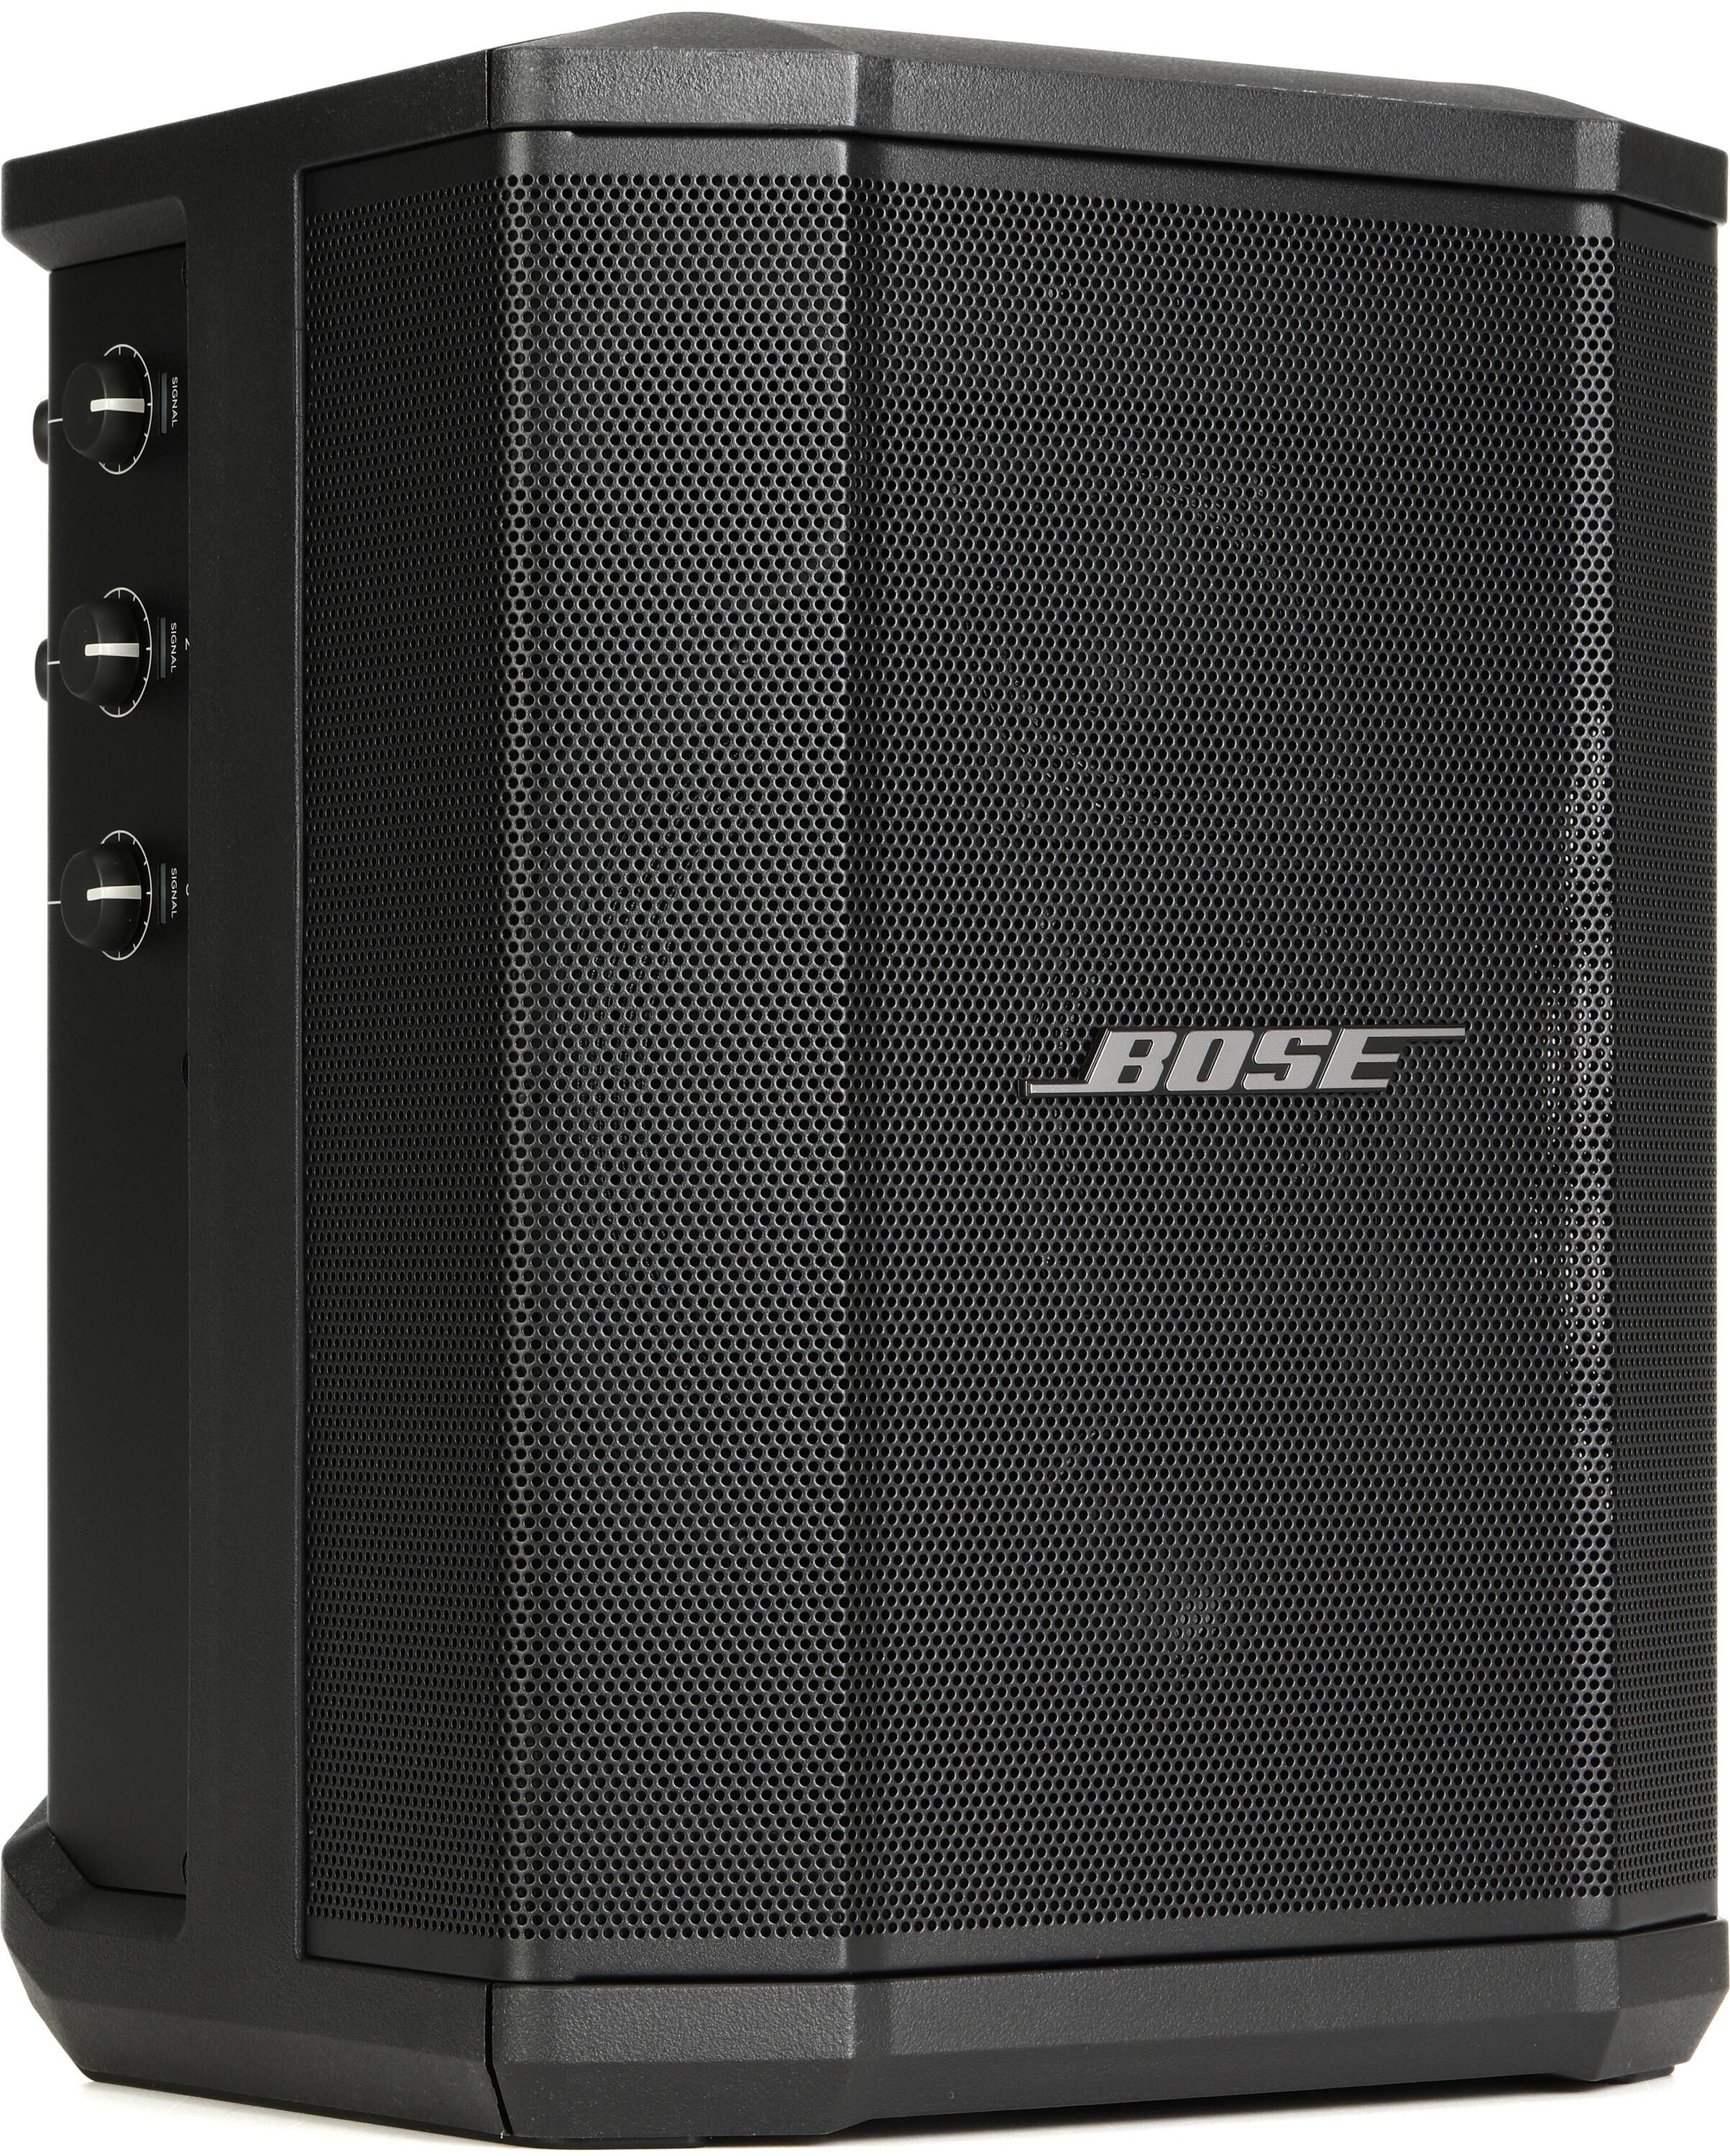 Bose S1 Pro Plus – Thomann France